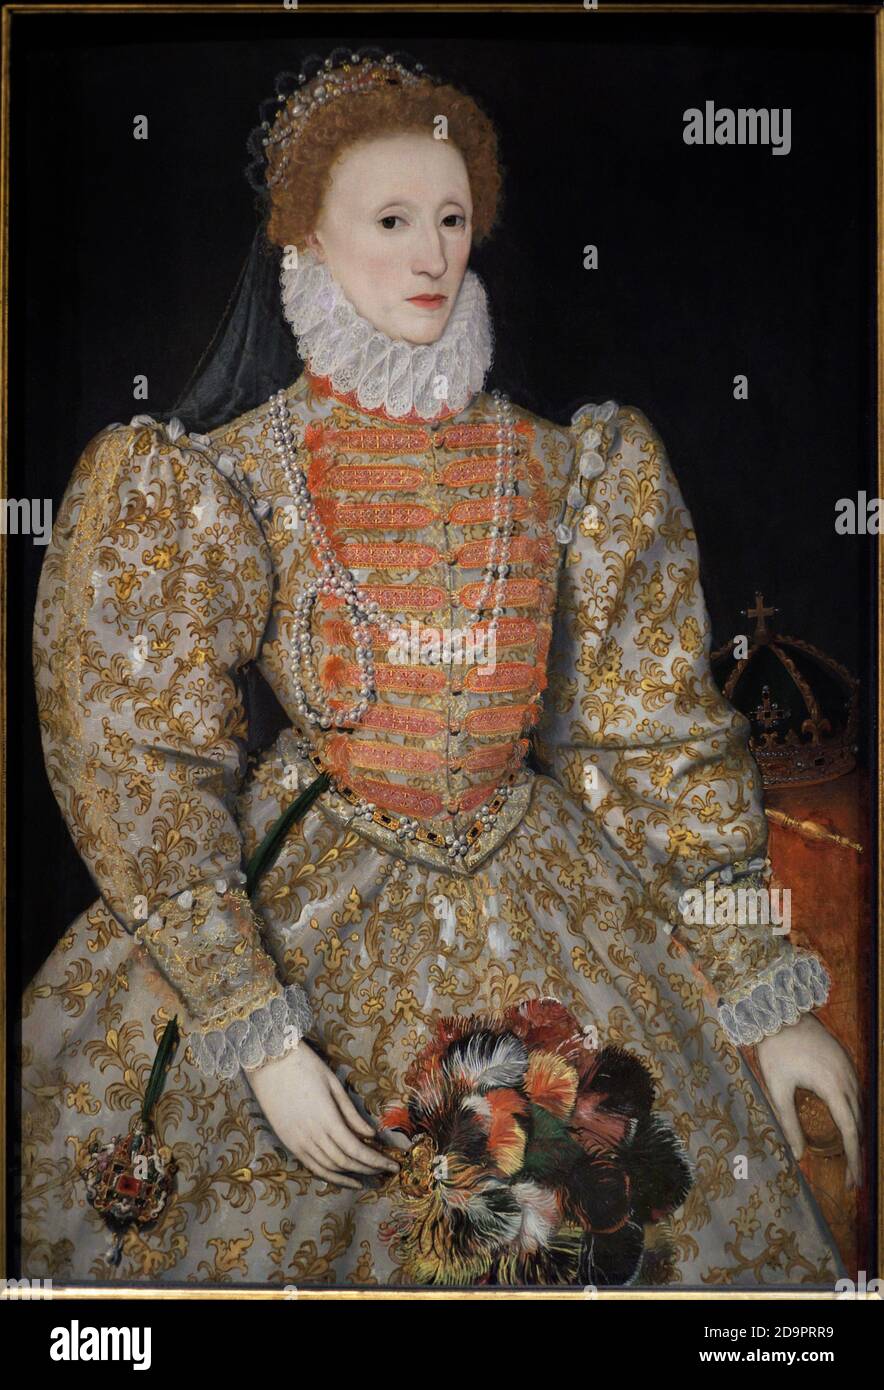 La reine Elizabeth I (1533-1603). Elle était la fille d'Henry VIII et d'Anne Boleyn. Peinture connue sous le nom de « portrait de Darnley ». Artiste inconnu. Huile sur le panneau, c.1575. Galerie nationale de portraits. Londres, Angleterre, Royaume-Uni. Banque D'Images